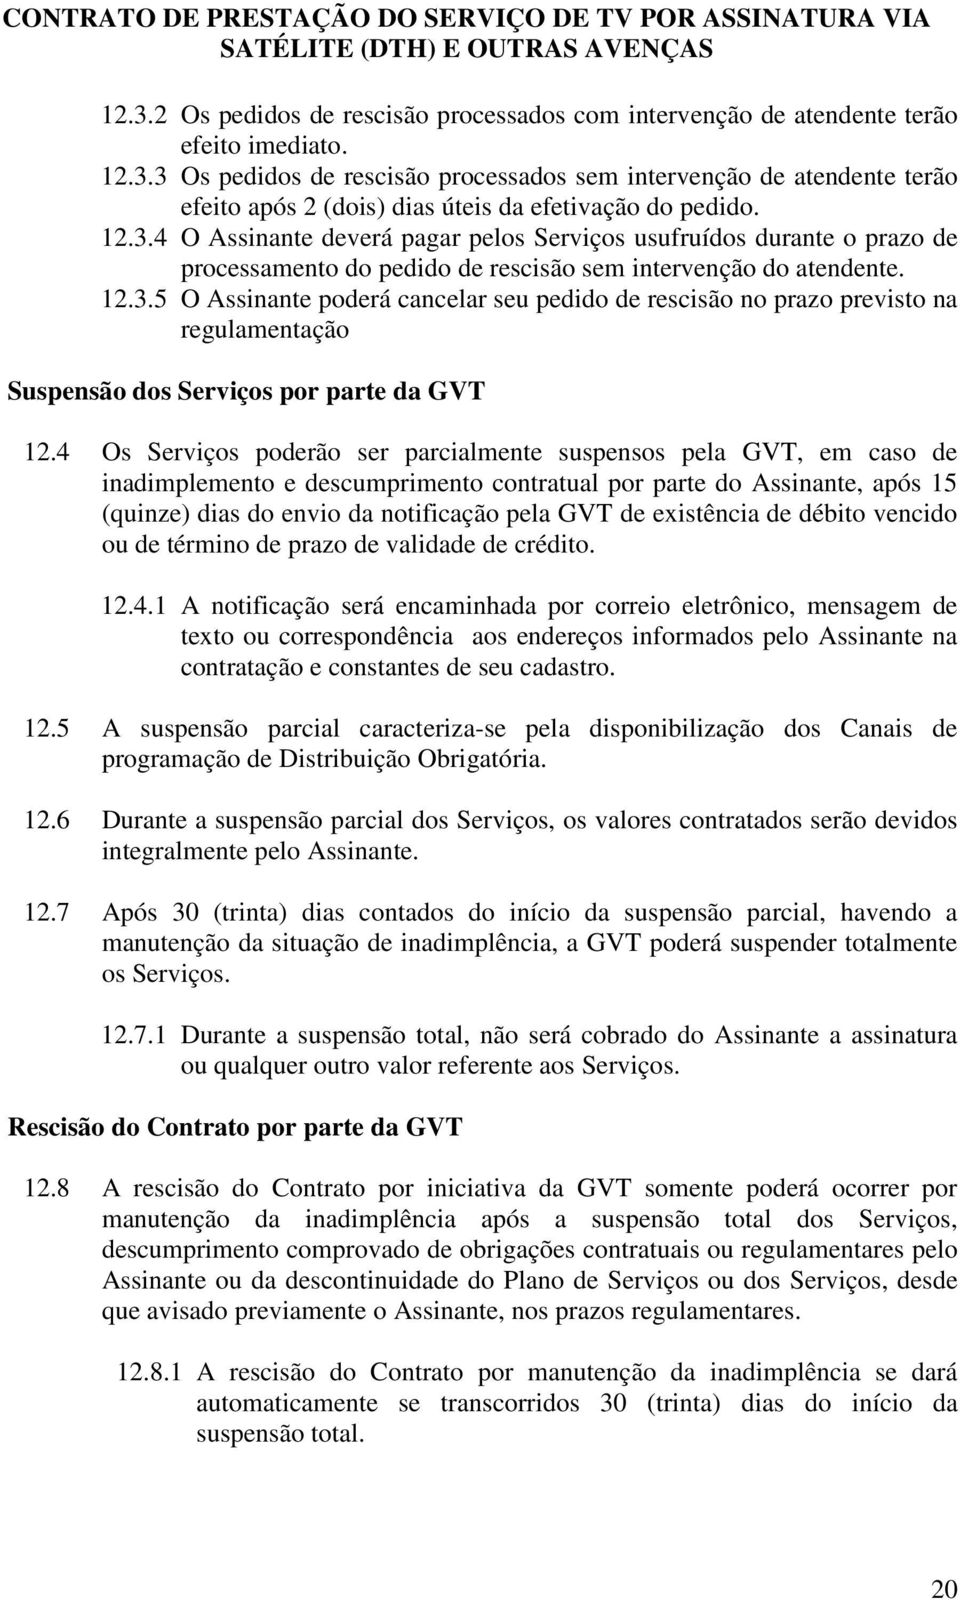 4 Os Serviços poderão ser parcialmente suspensos pela GVT, em caso de inadimplemento e descumprimento contratual por parte do Assinante, após 15 (quinze) dias do envio da notificação pela GVT de